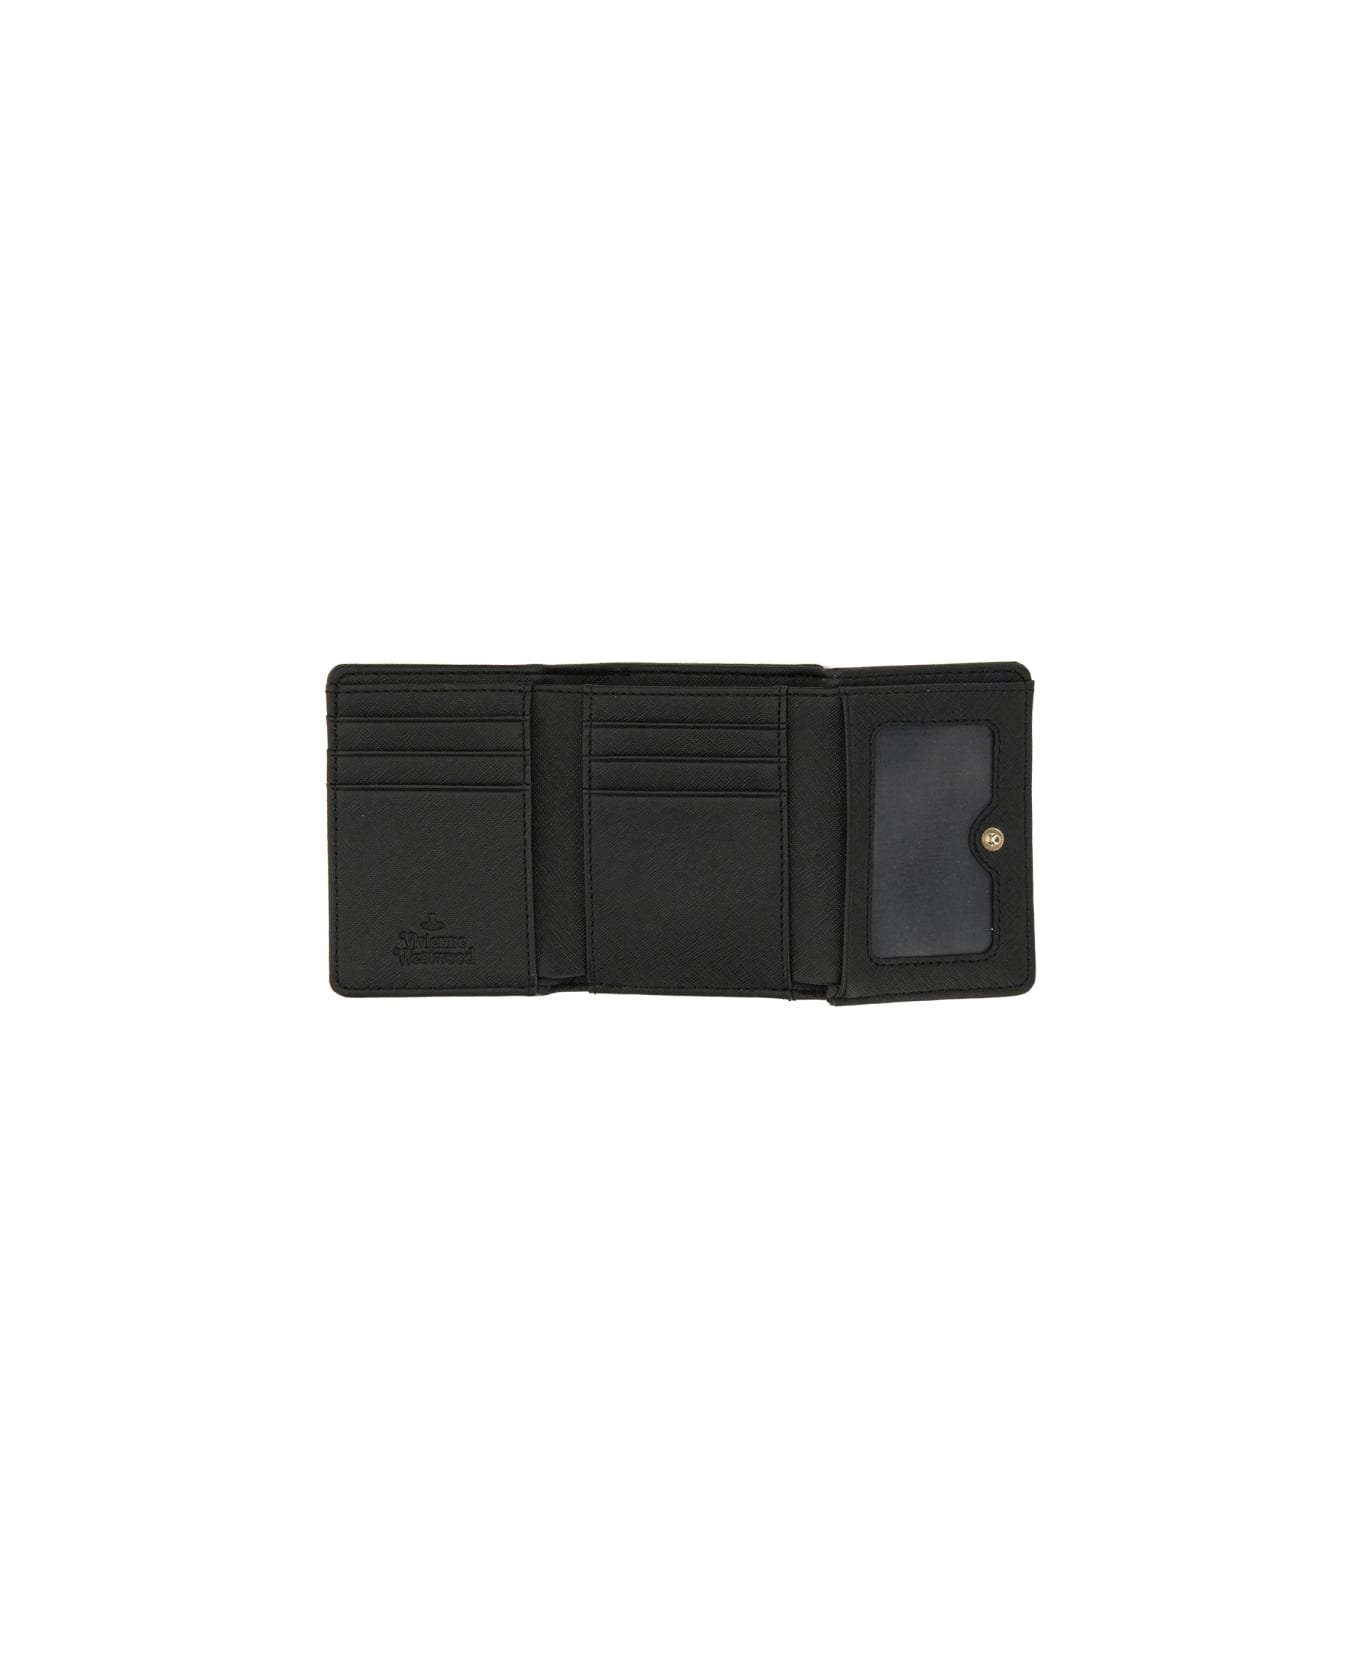 Vivienne Westwood Leather Wallet - BLACK